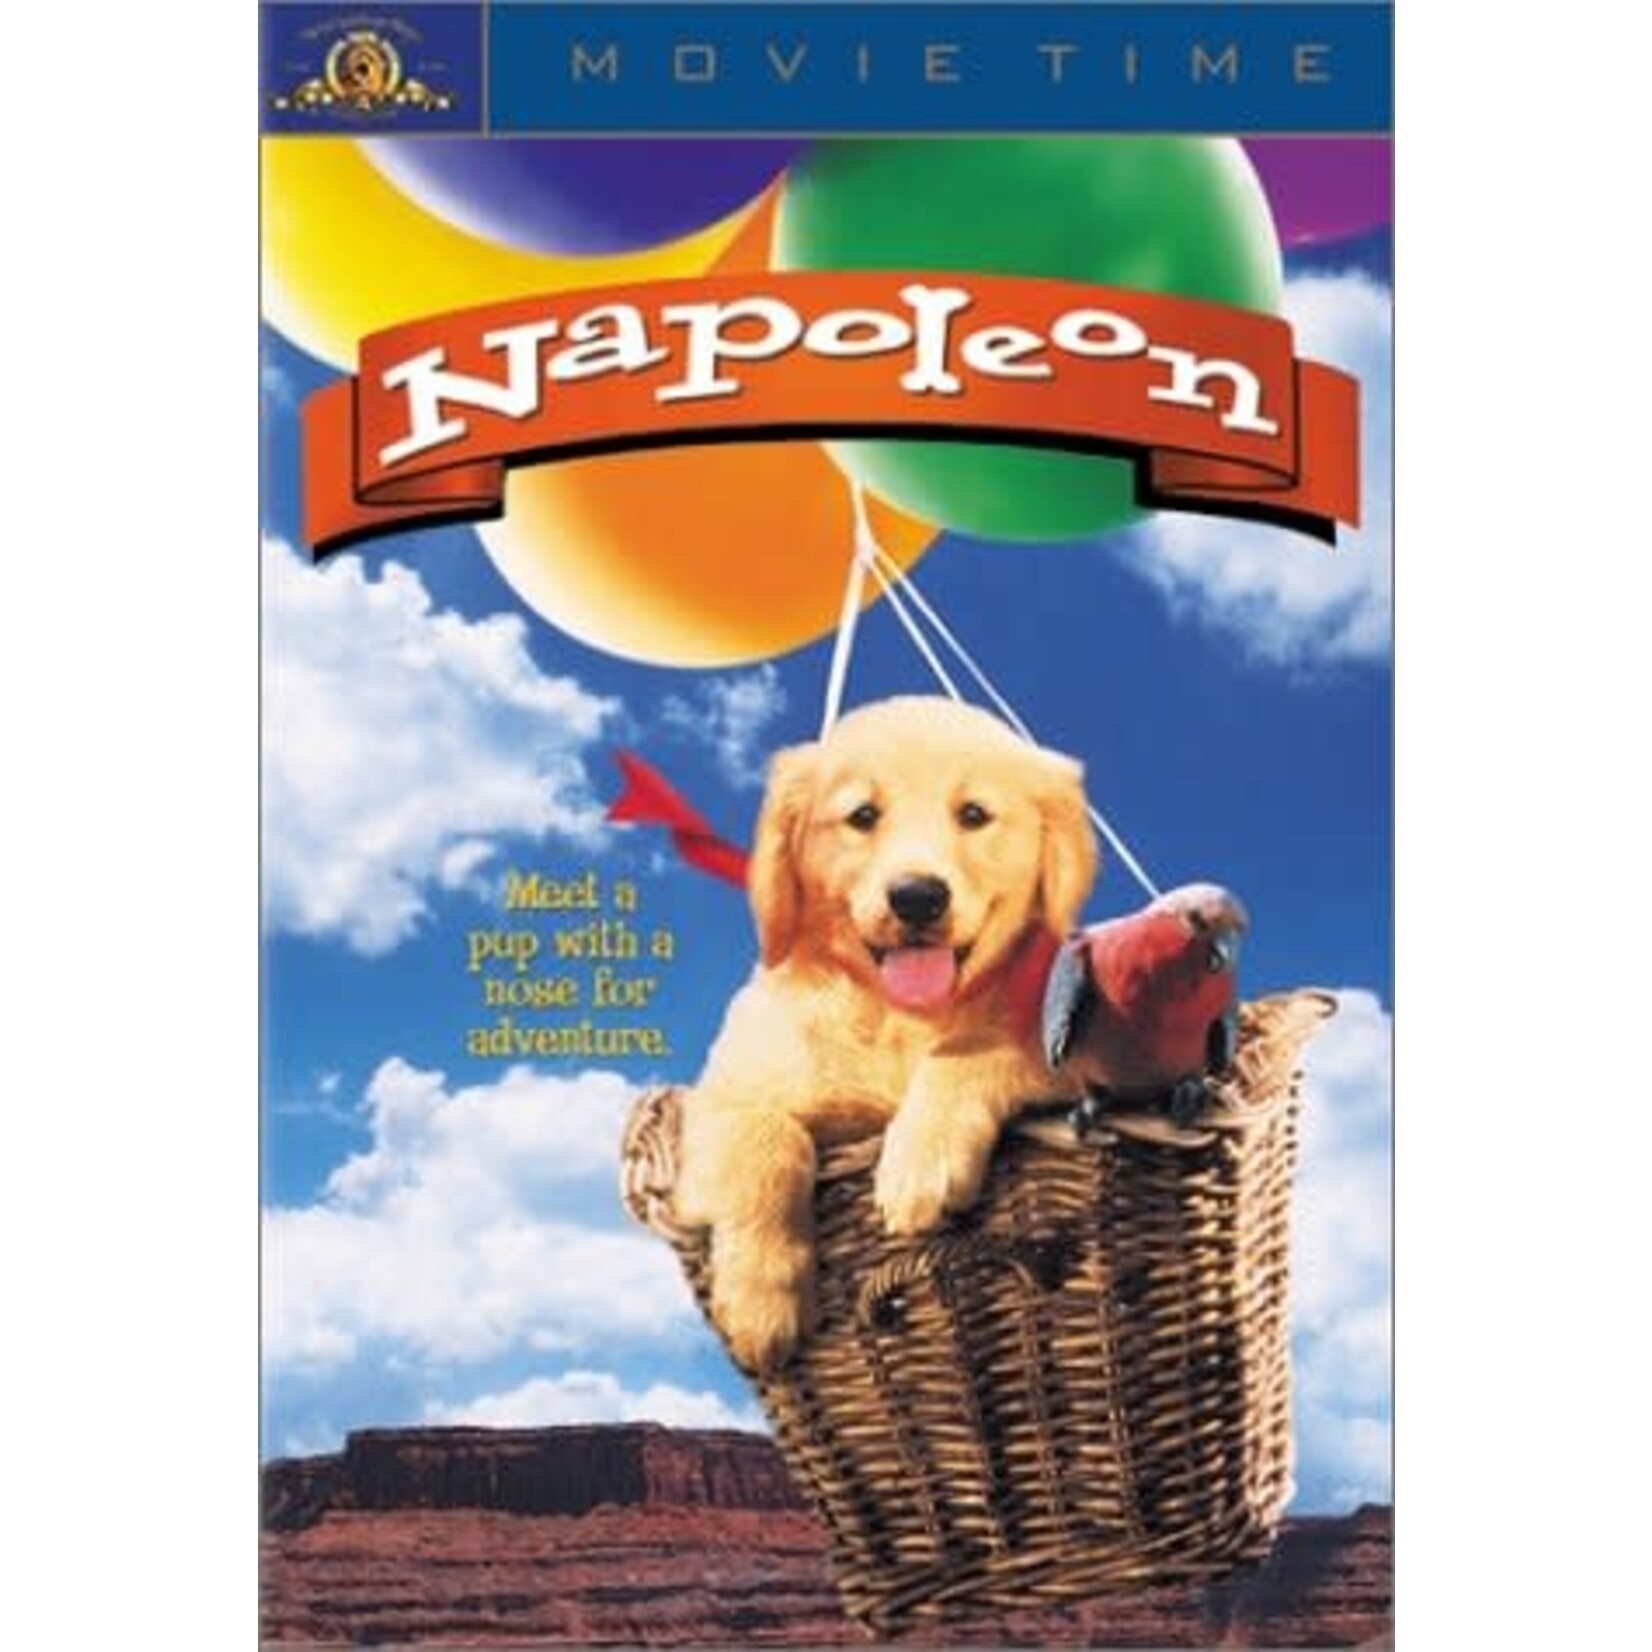 Napoleon (1995) [USED DVD]